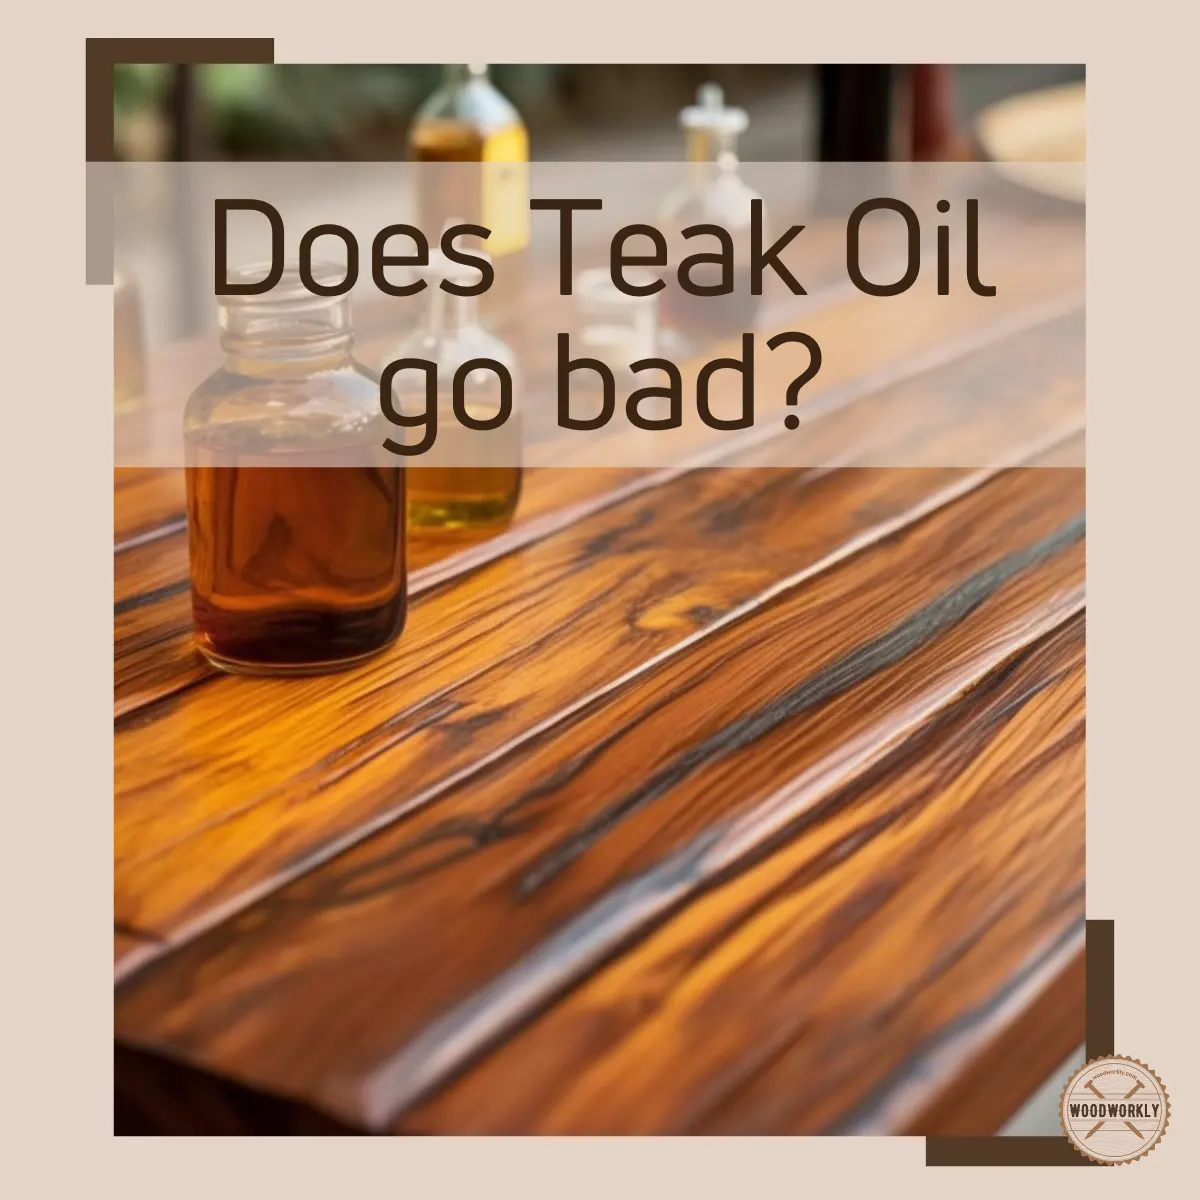 Does teak oil go bad